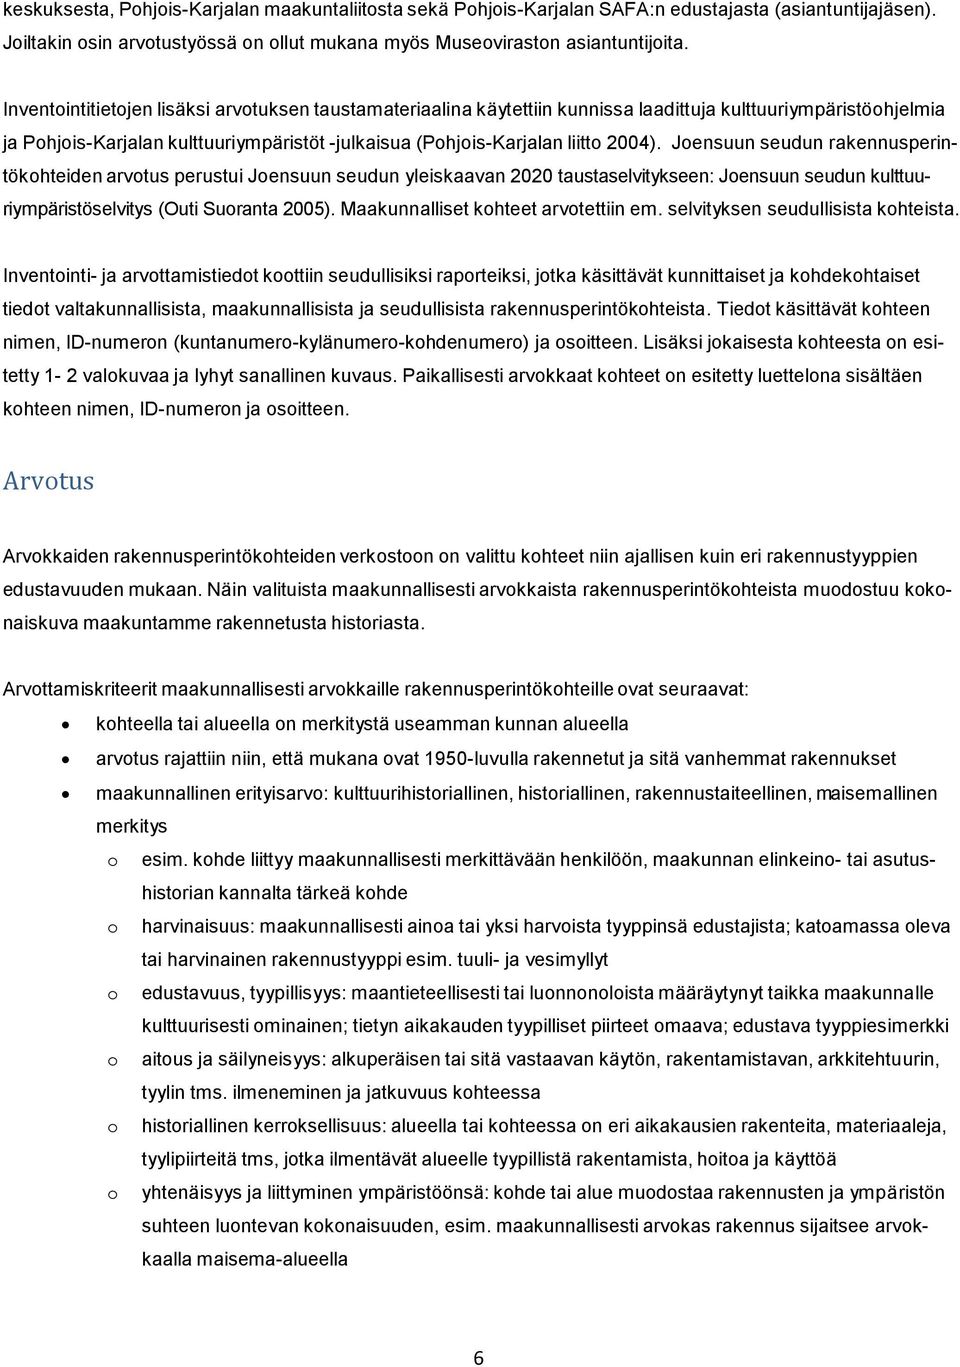 Joensuun seudun rakennusperintökohteiden arvotus perustui Joensuun seudun yleiskaavan 2020 taustaselvitykseen: Joensuun seudun kulttuuriympäristöselvitys (Outi Suoranta 2005).